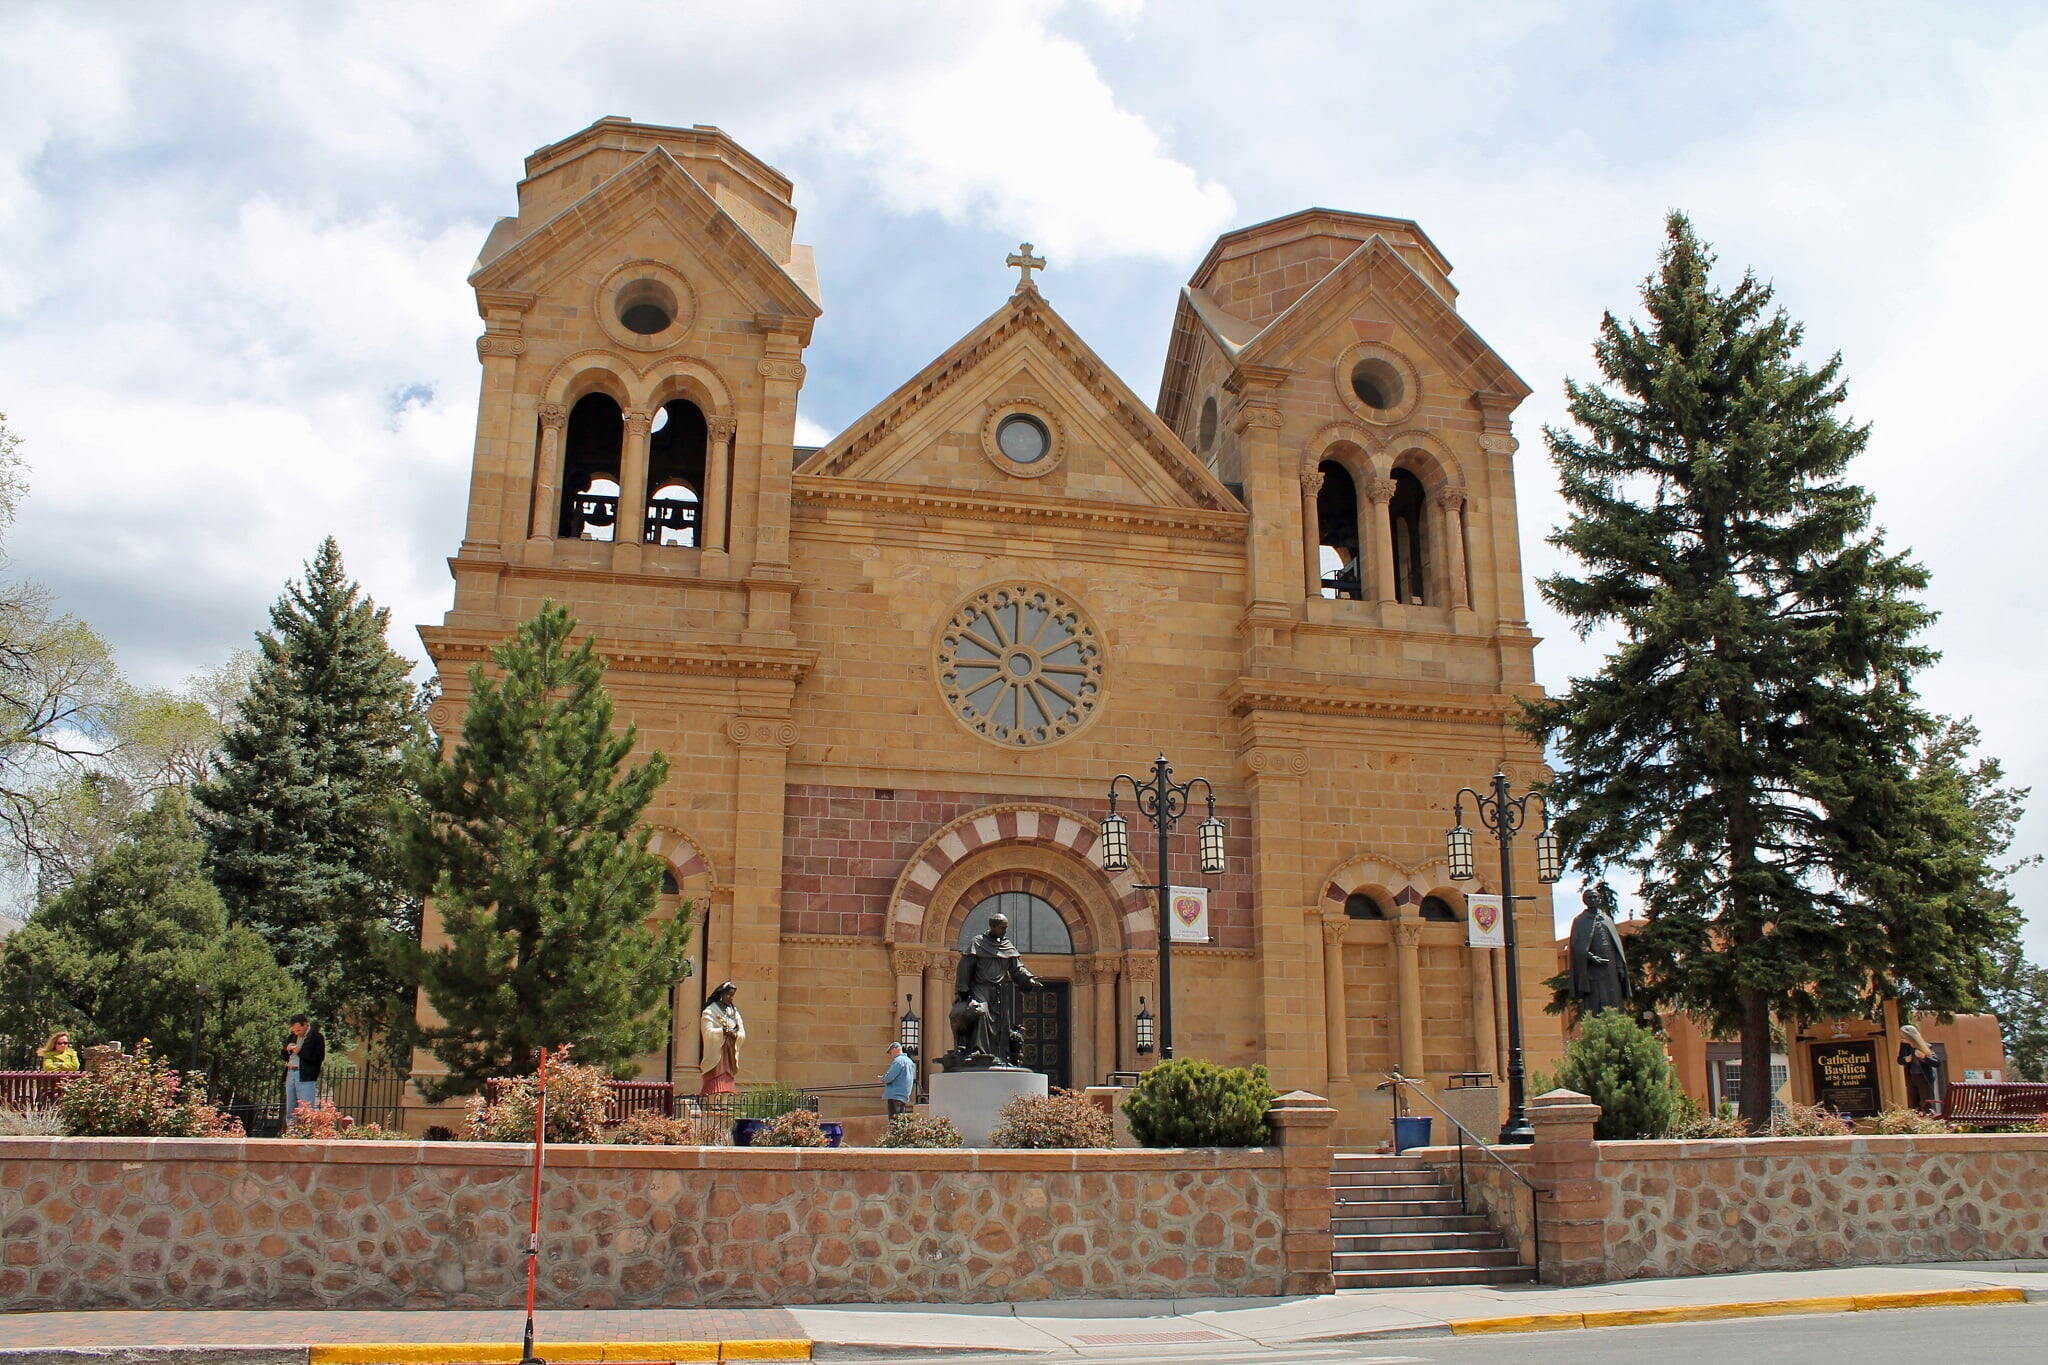 Santa Fe - Cathedral Basilica of St. Francis of Assisi, Santa Fe, New Mexico.